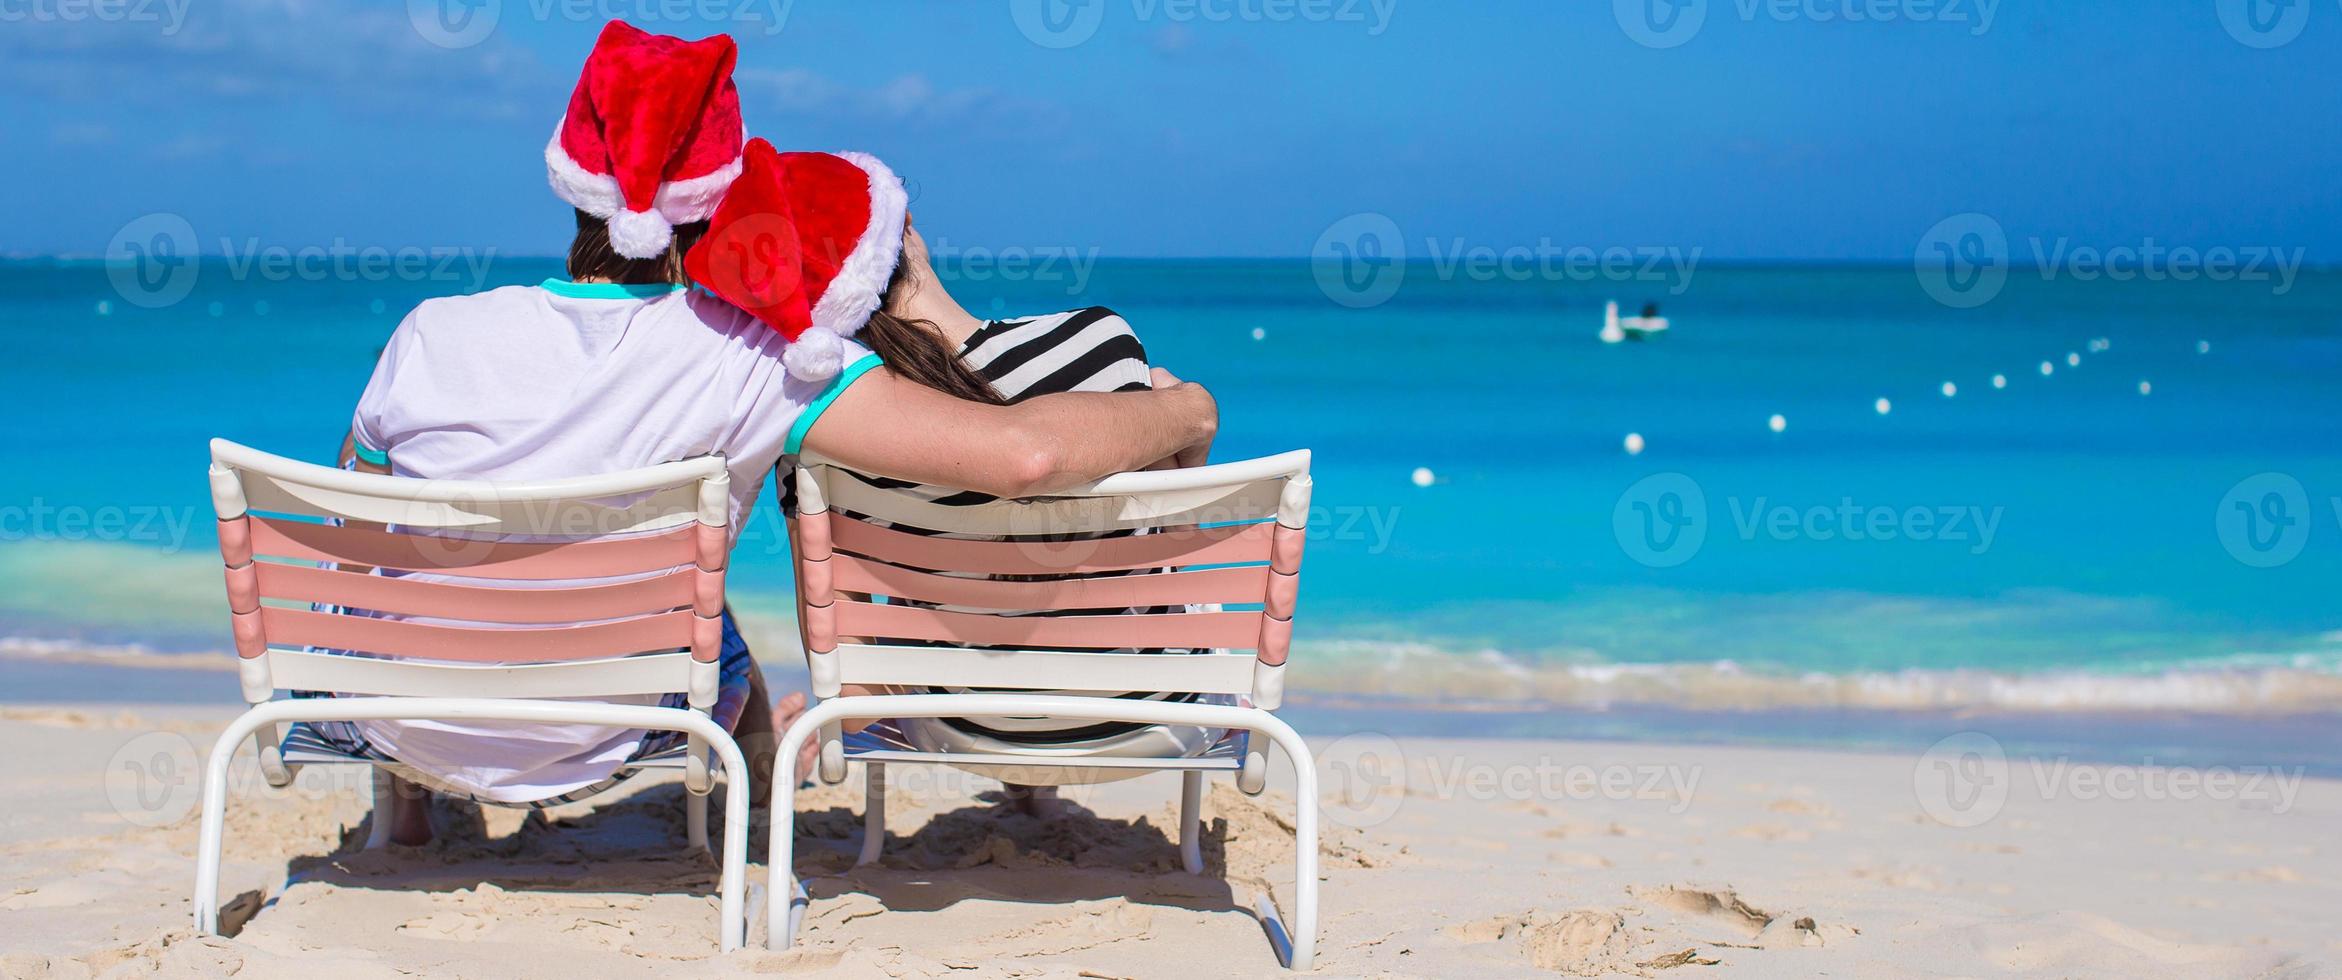 jovem casal romântico em chapéus de Papai Noel durante as férias na praia foto